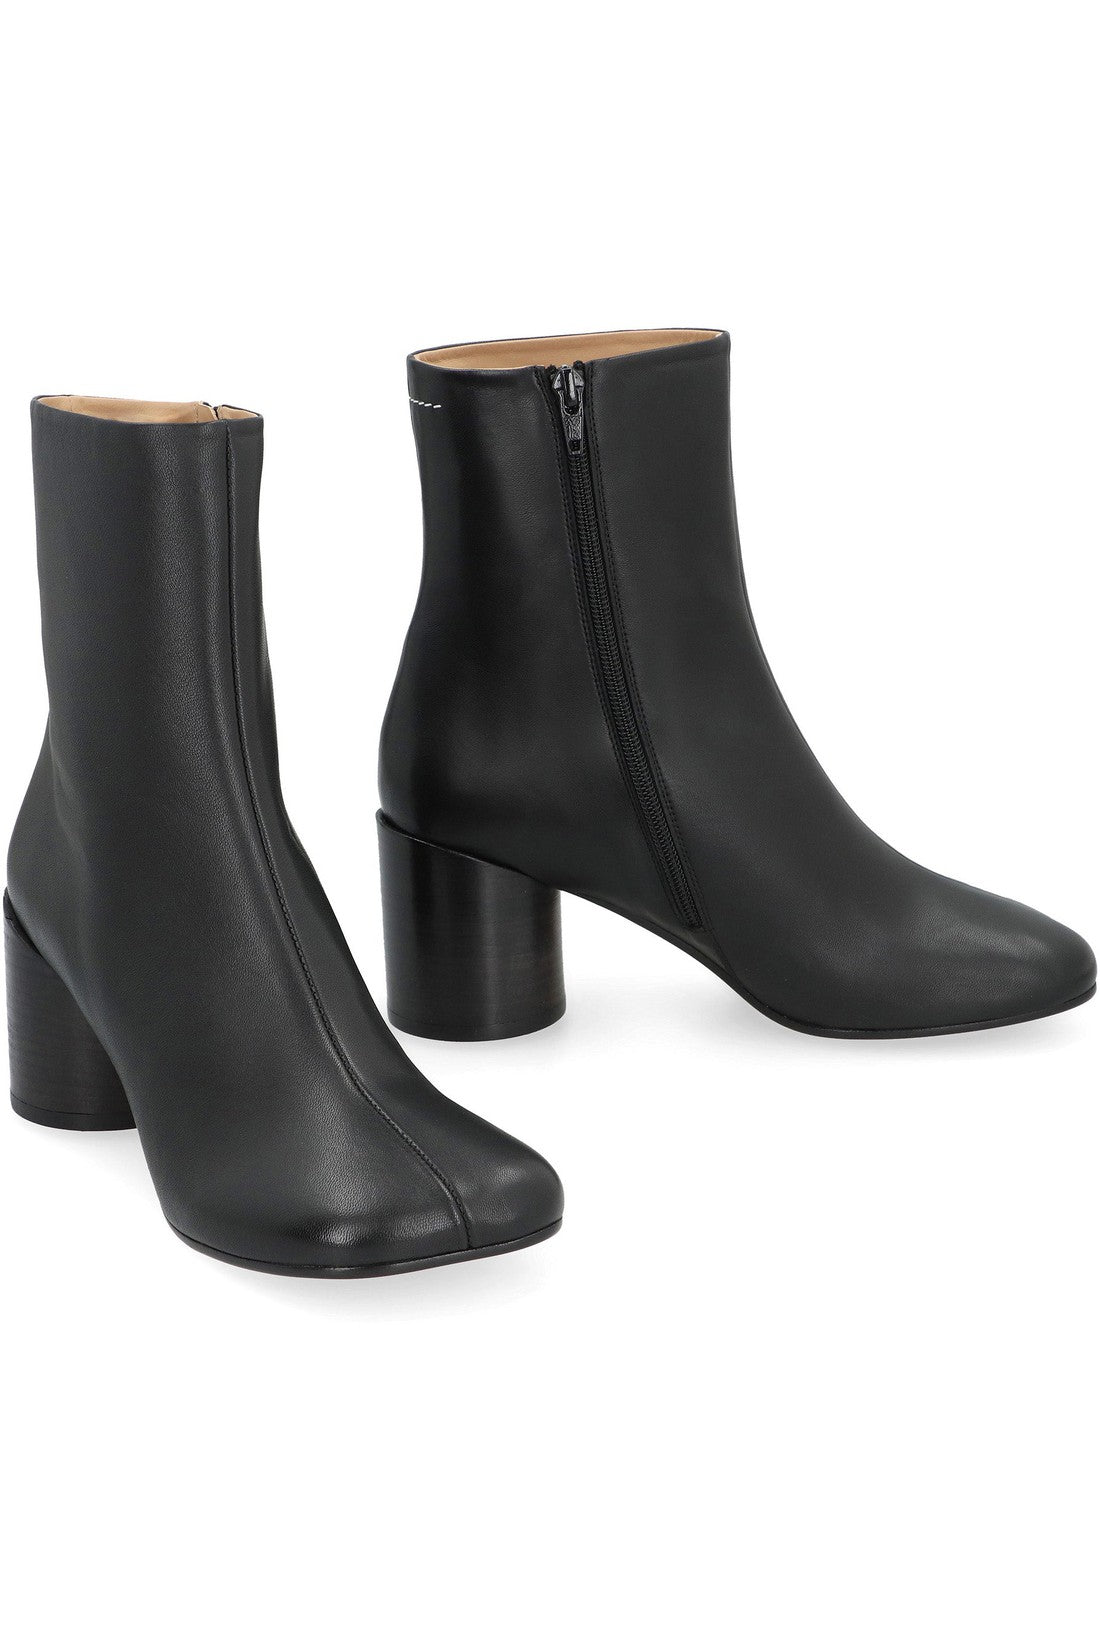 MM6 Maison Margiela-OUTLET-SALE-Anatomic leather ankle boots-ARCHIVIST